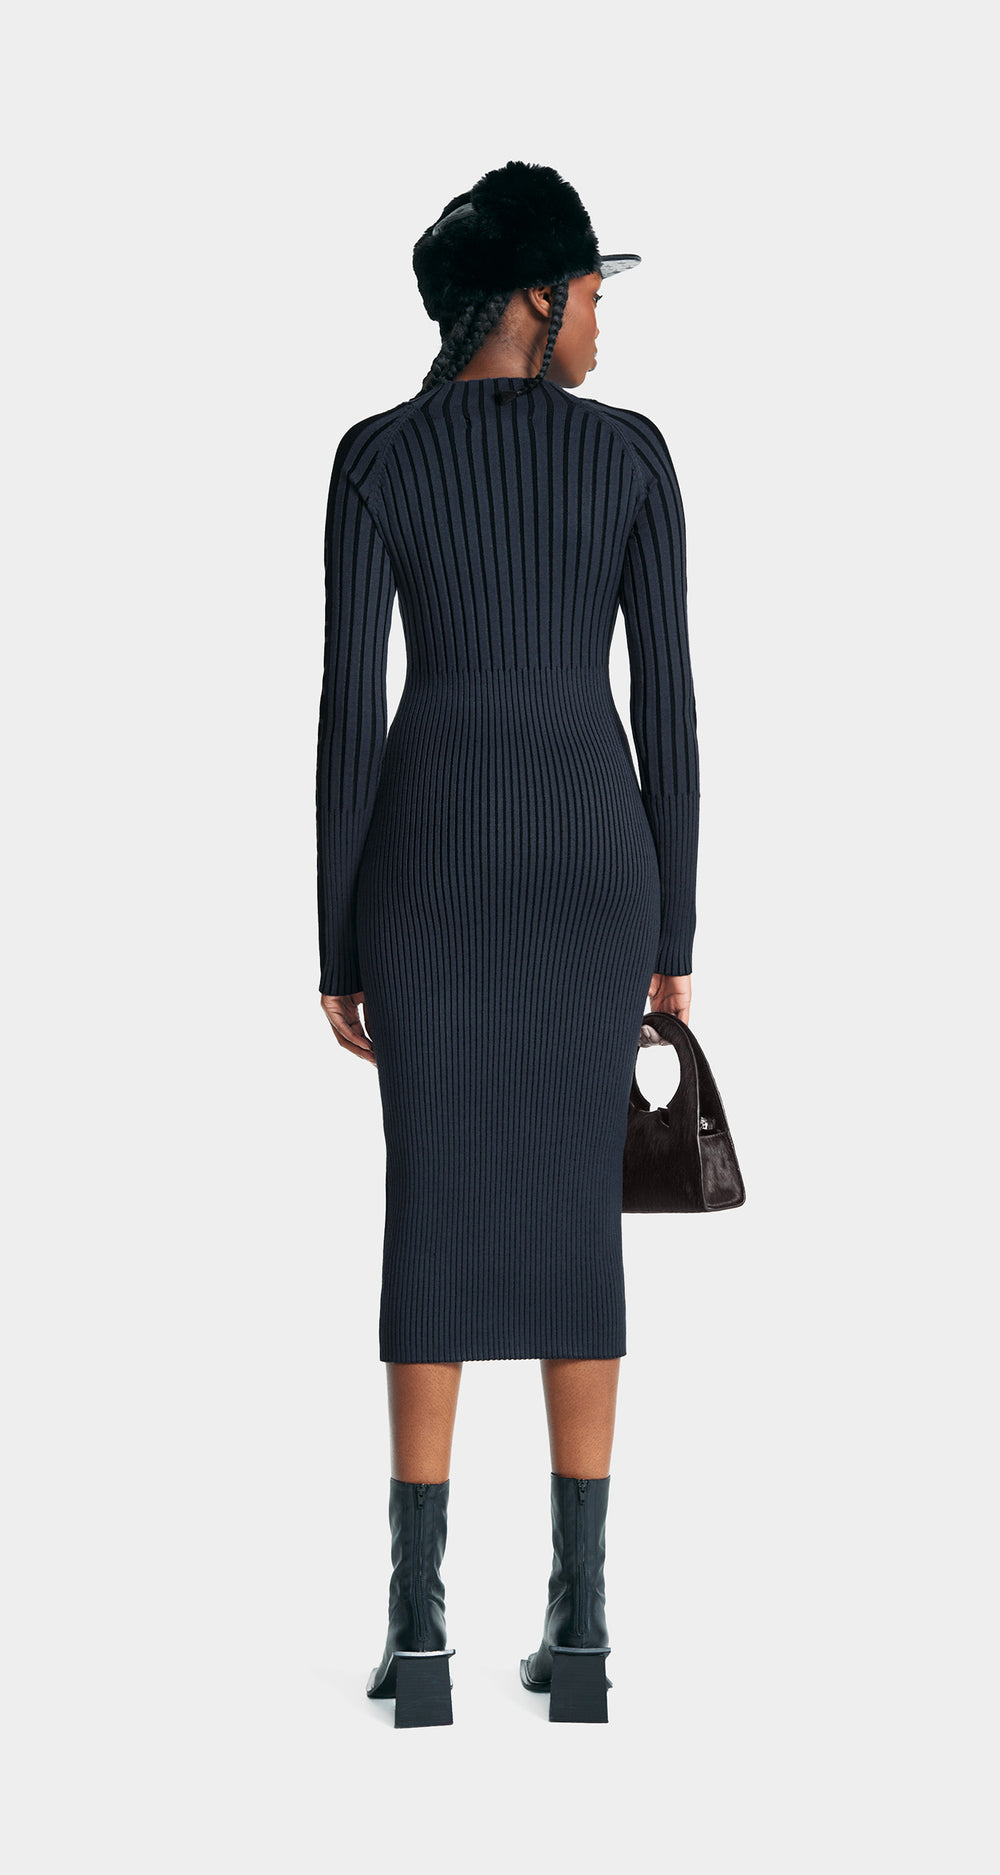 DP - Grey Lore Knit Dress - Modelshot - wmn - rear